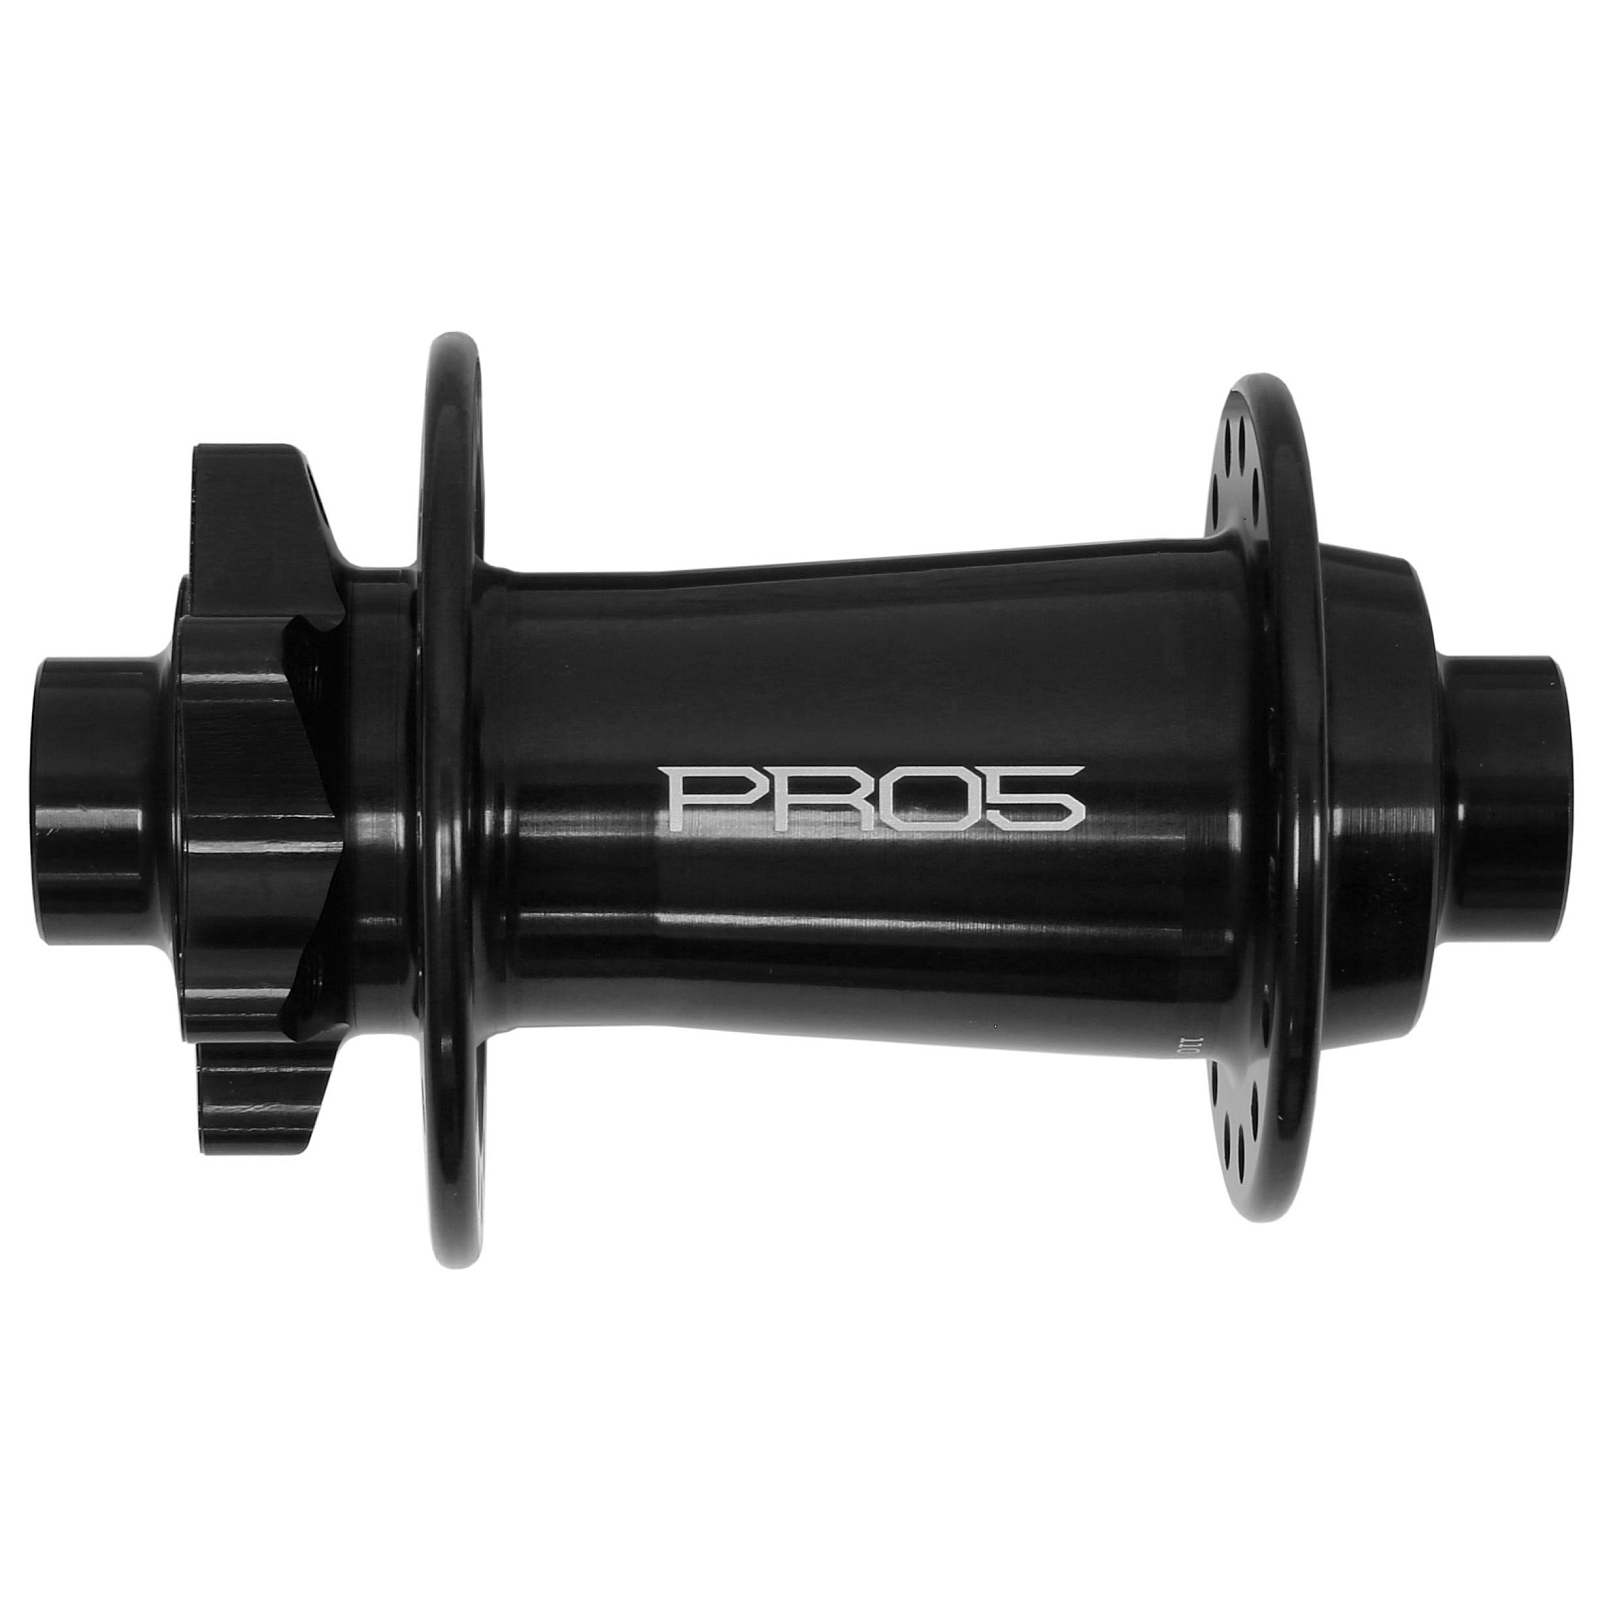 Productfoto van Hope Pro 5 Voorwielnaaf - 6-Bolt - 15x110mm Boost - zwart